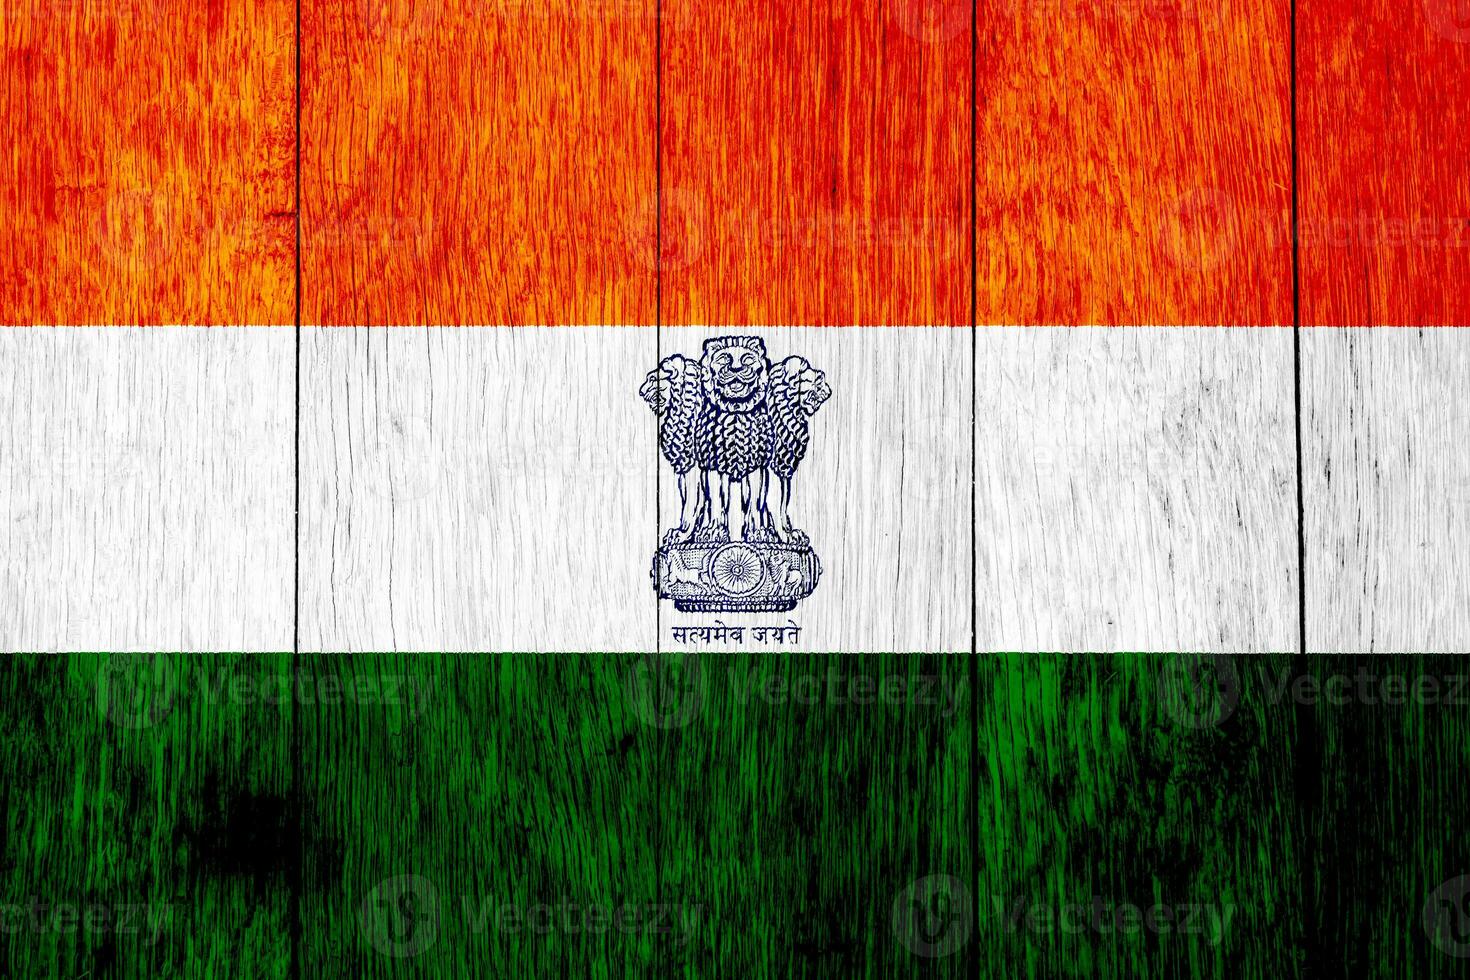 Flagge und Mantel von Waffen von das Republik von Indien auf ein texturiert Hintergrund. Konzept Collage. foto